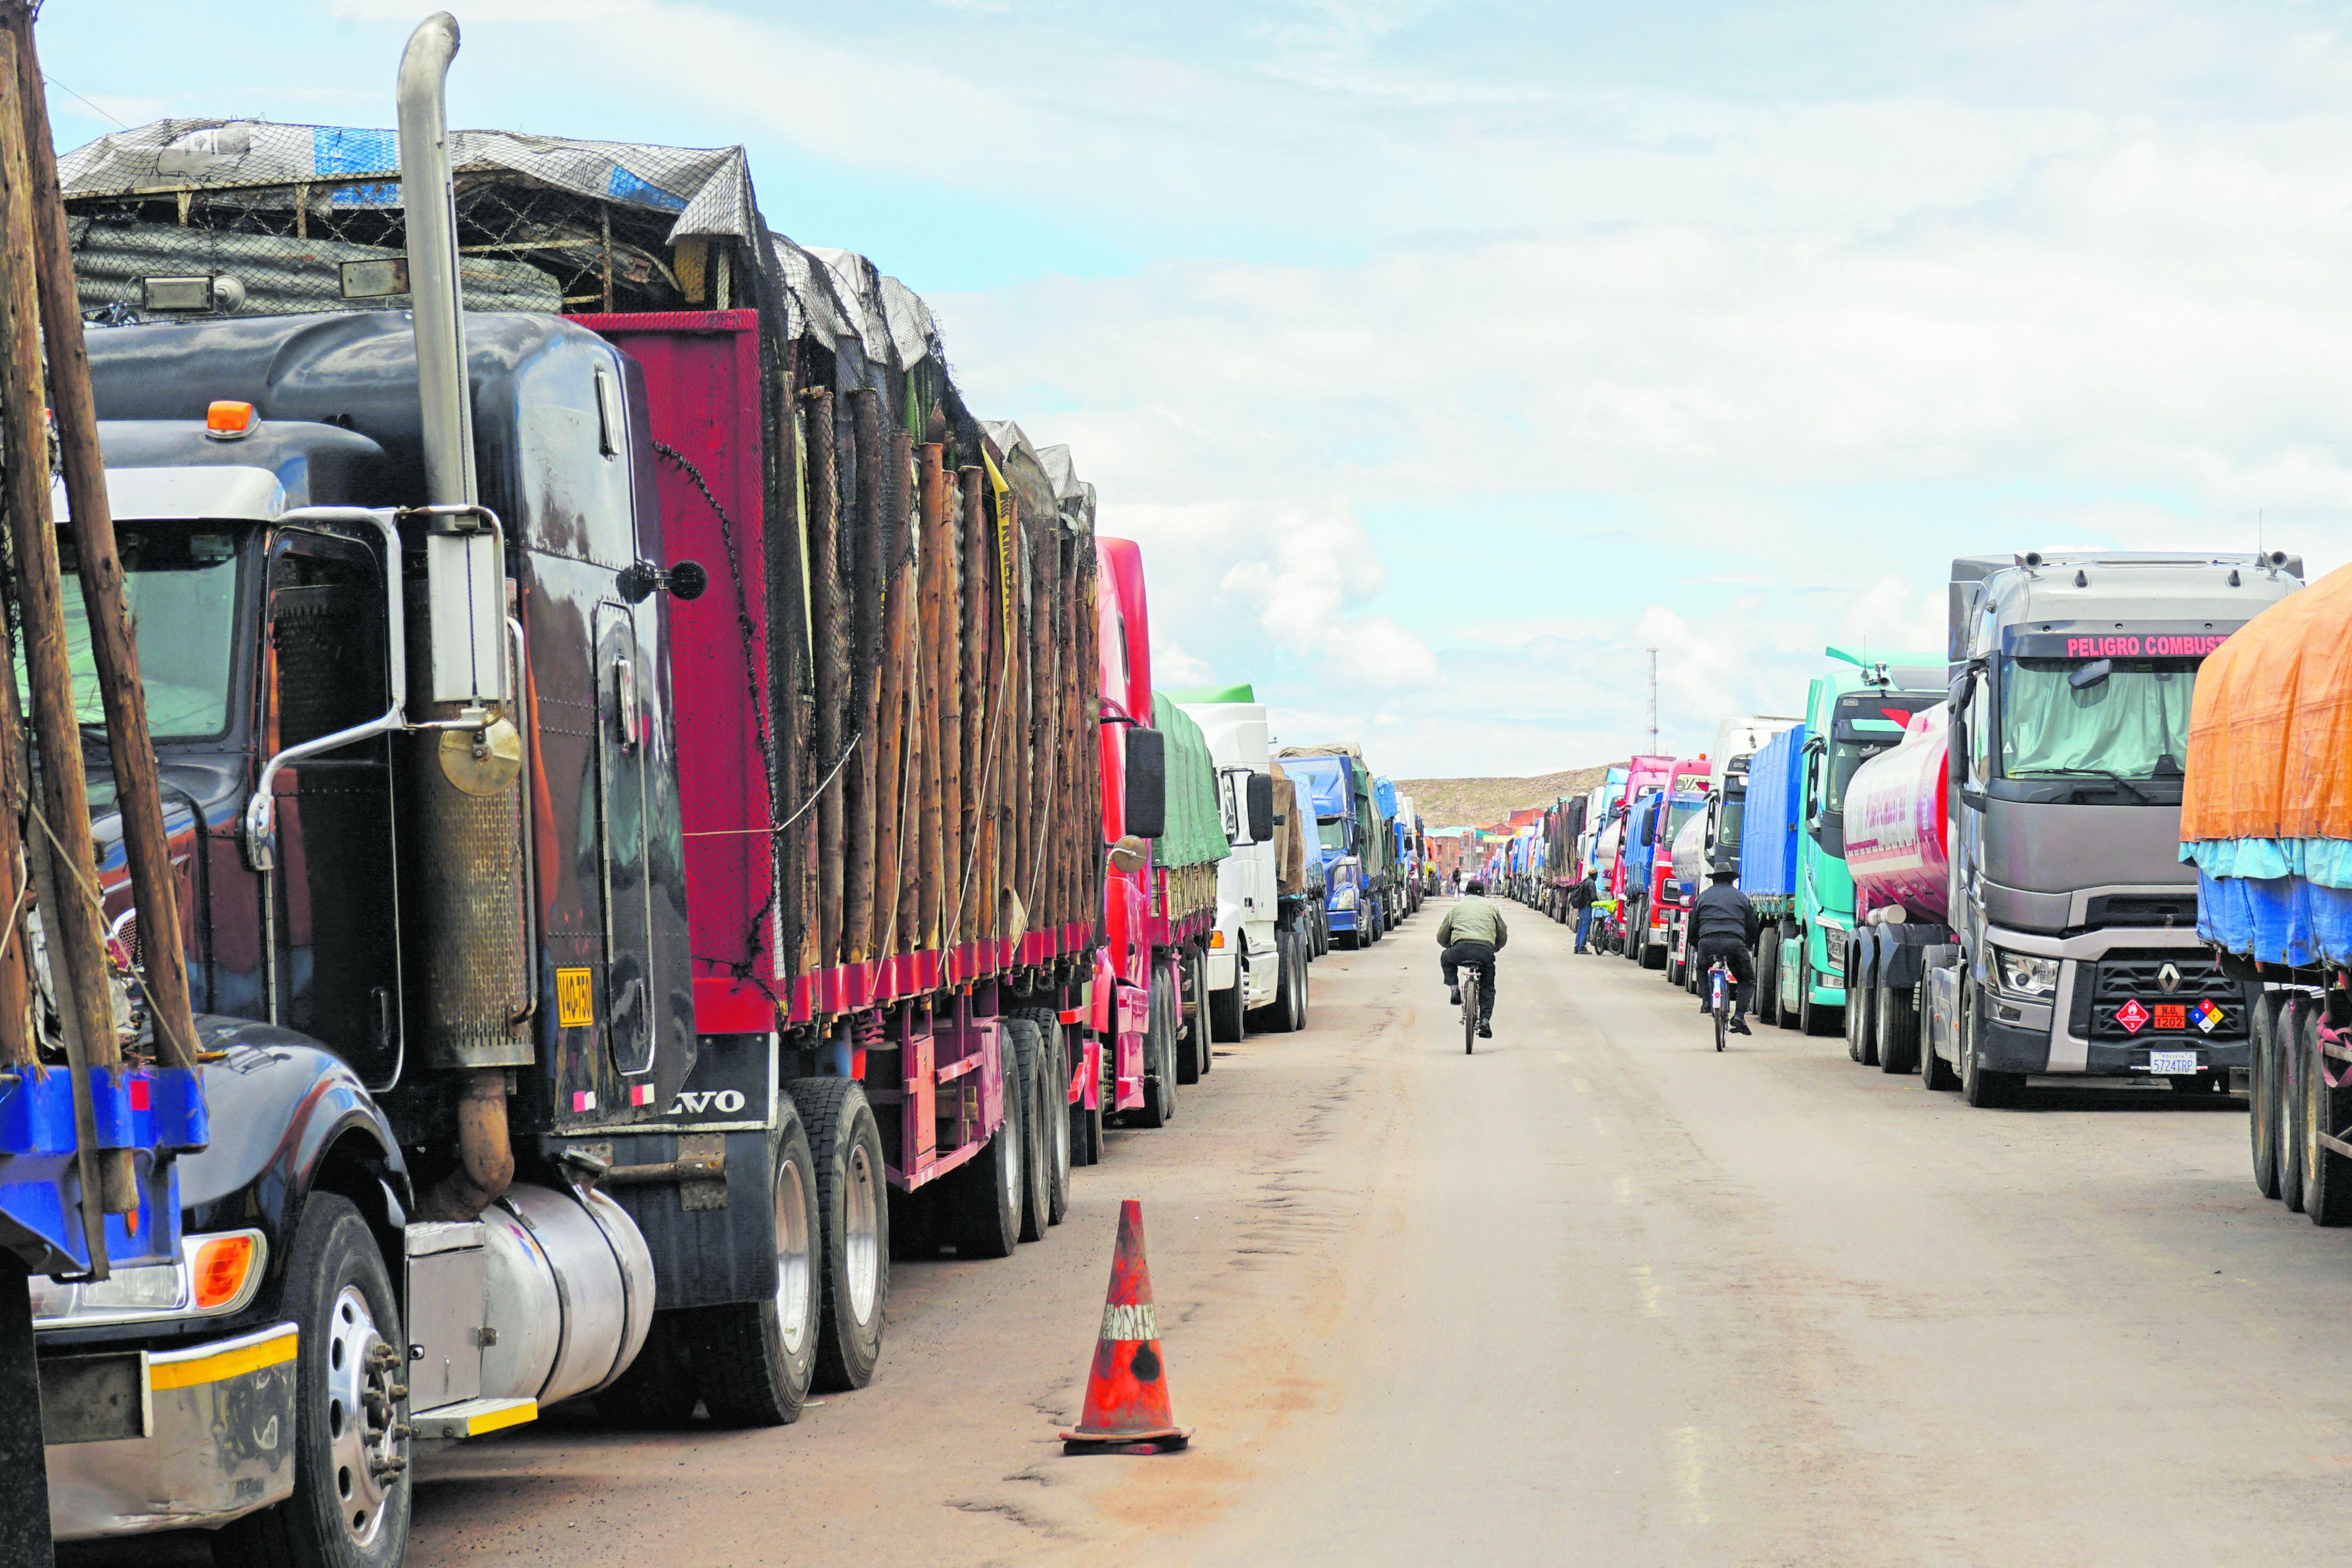 Más de 300 camioneros mantienen sus vehículos alineados durante días esperando que se abra la carretera a Bolivia en el paso fronterizo de Desaguadero, en Puno. (Foto: Bernat BIDEGAIN / AFP)